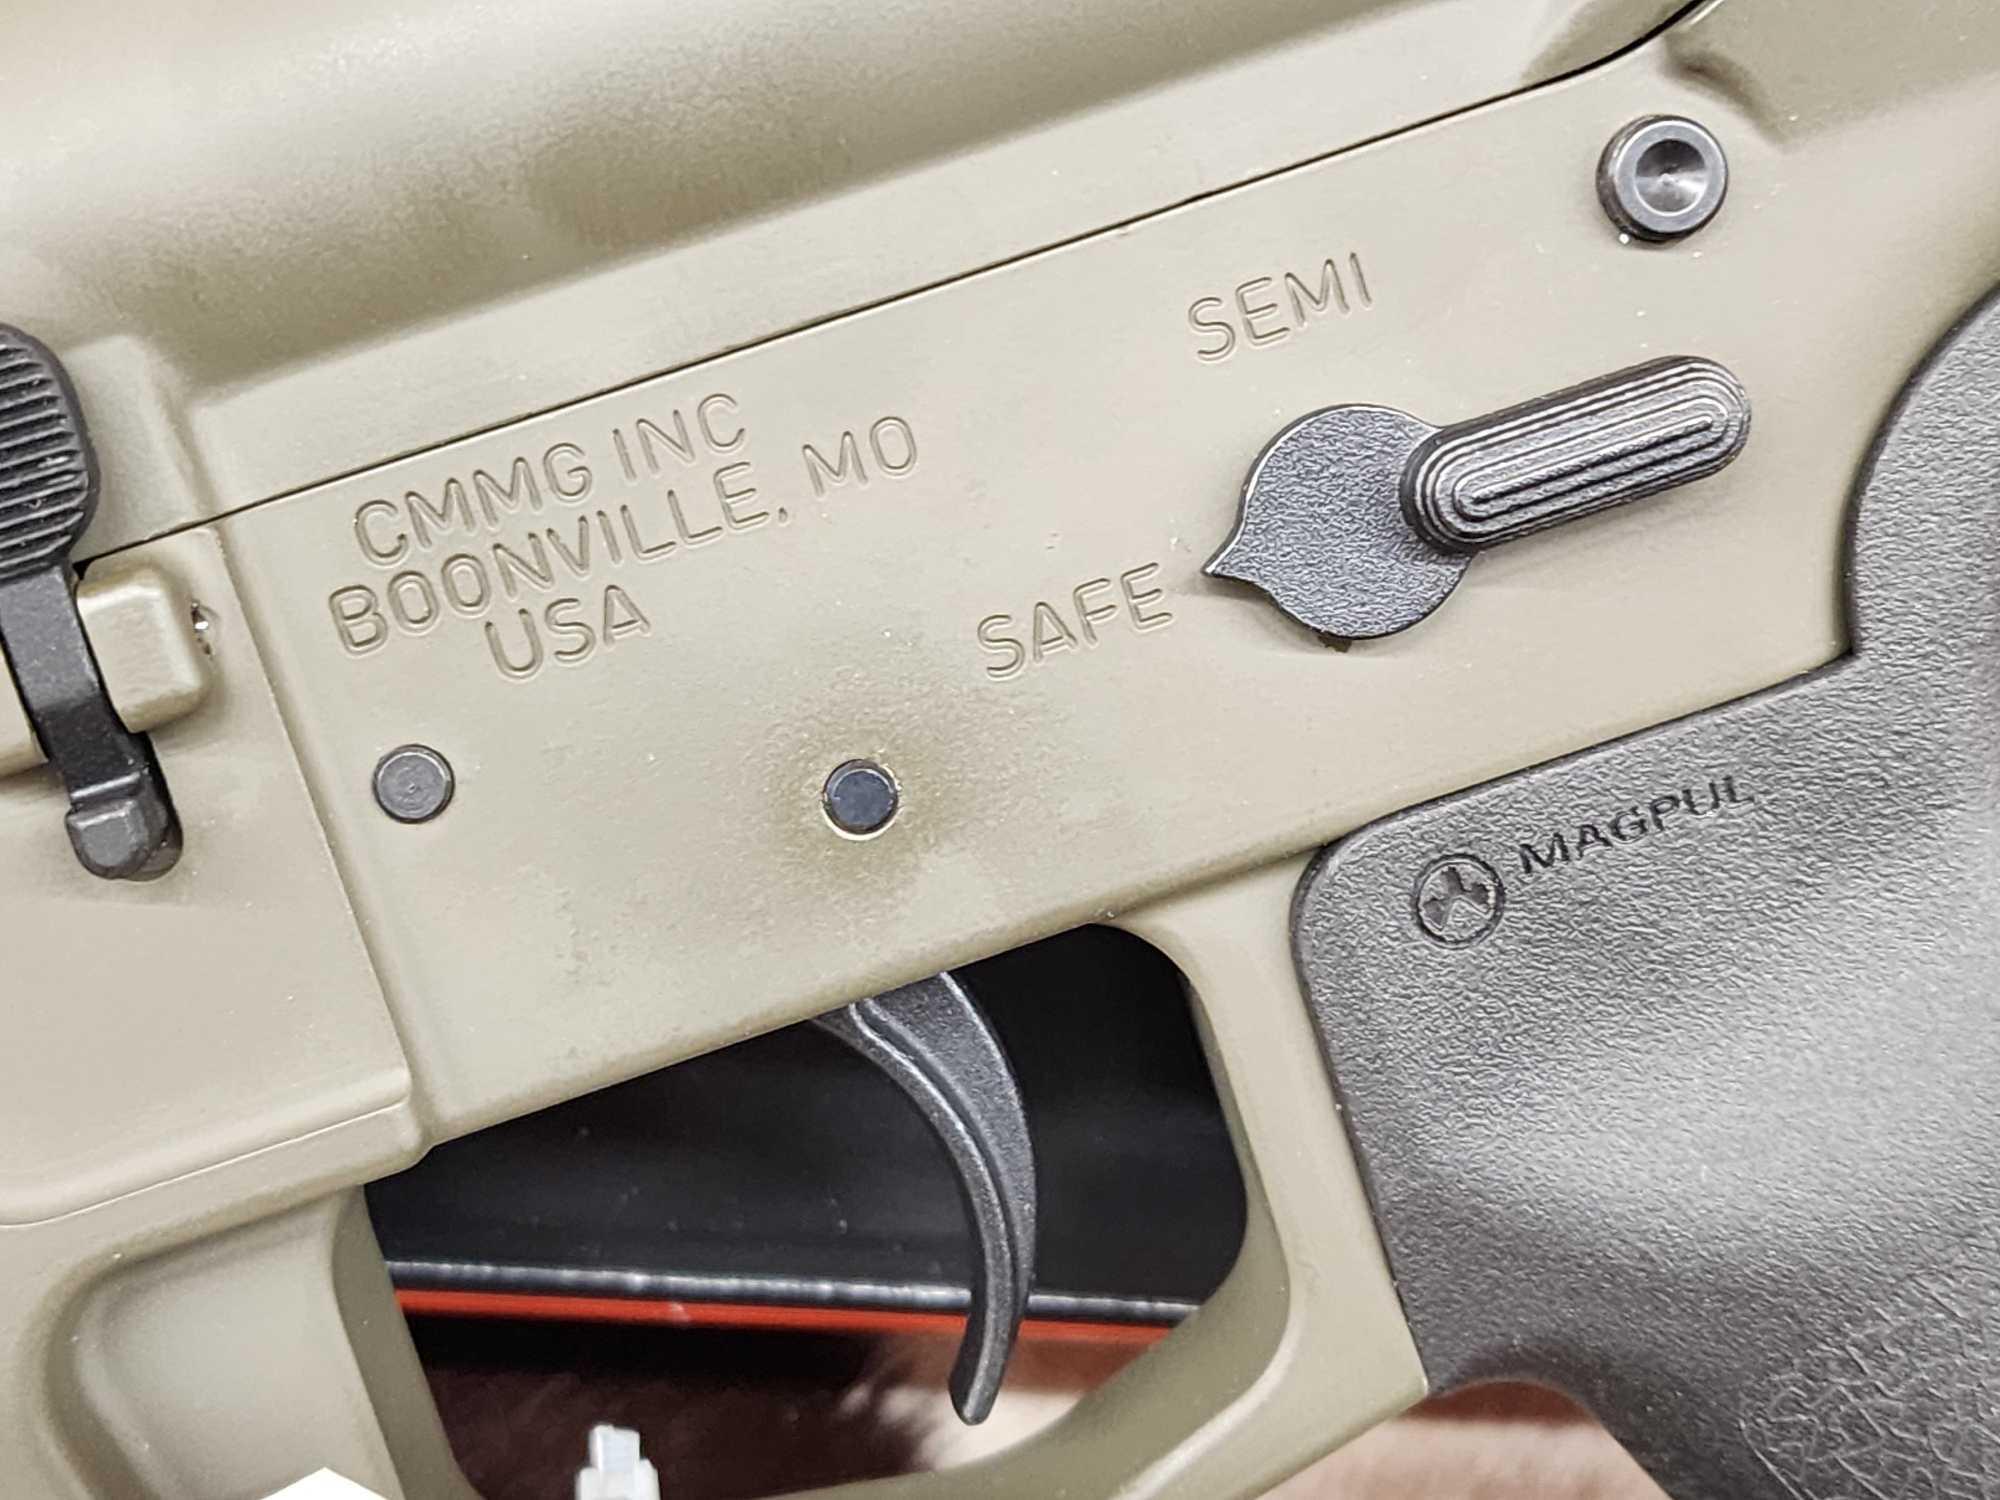 CMMG Banshee 300 9mm Semi Auto Pistol